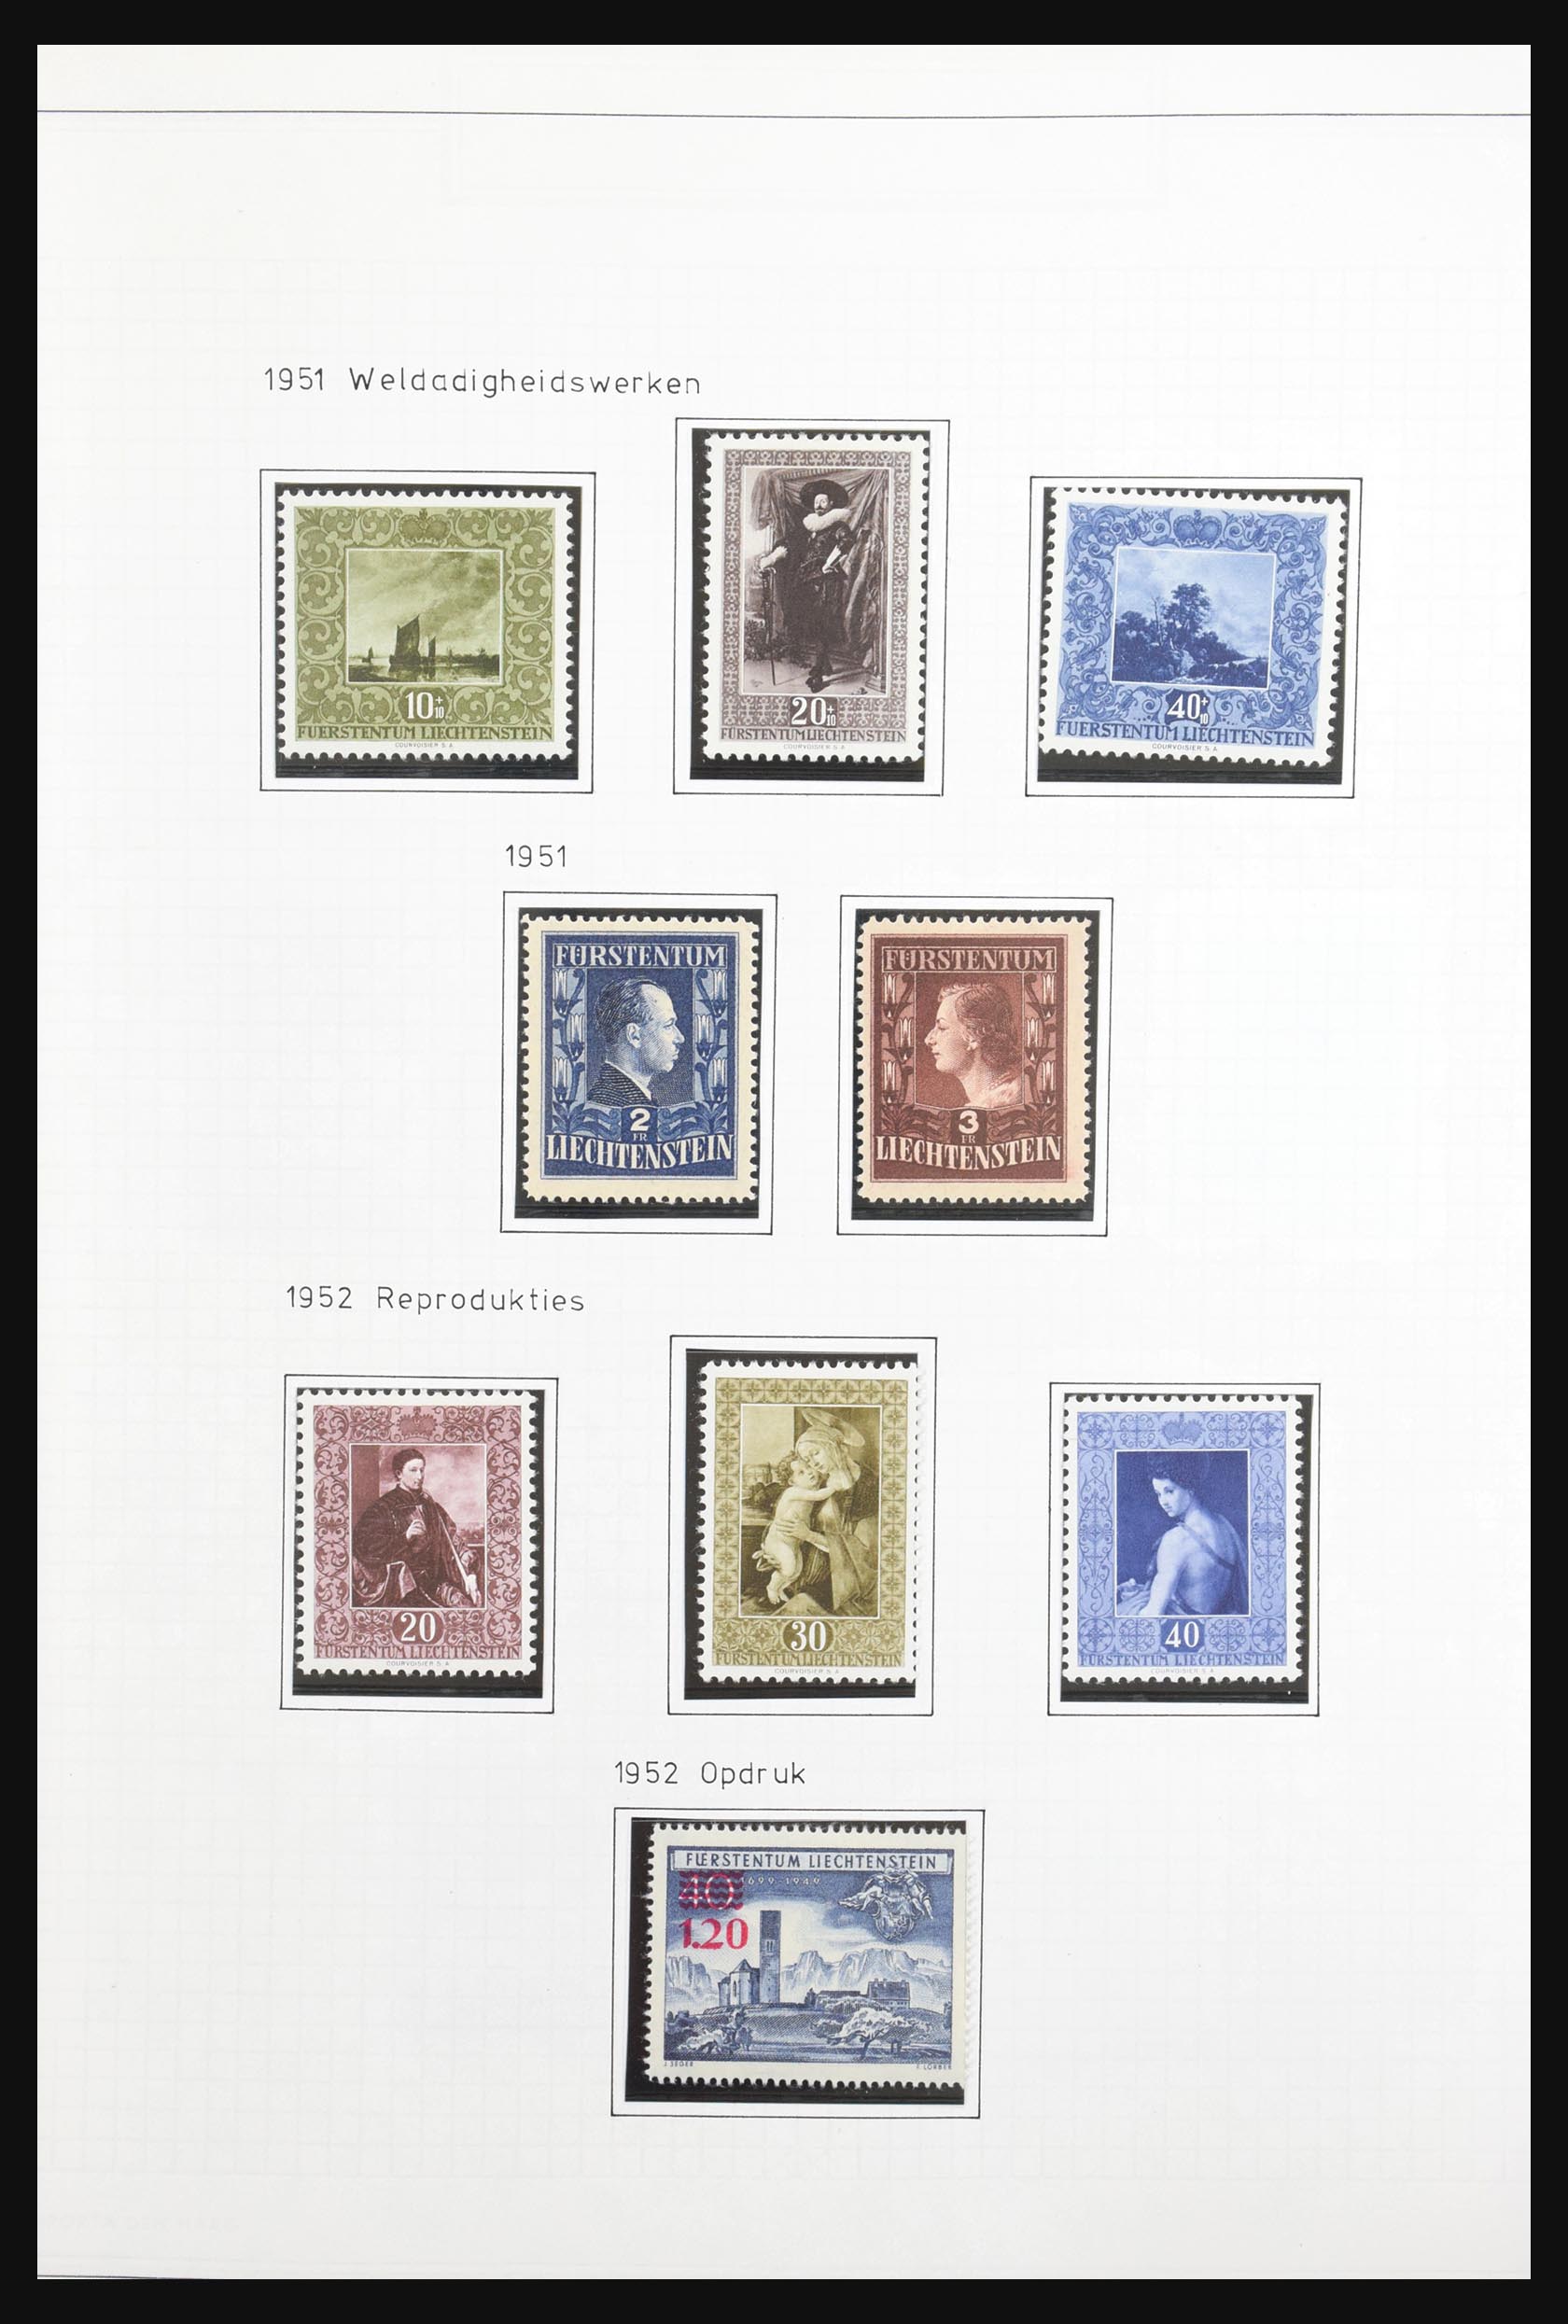 31131 026 - 31131 Liechtenstein 1912-2013.